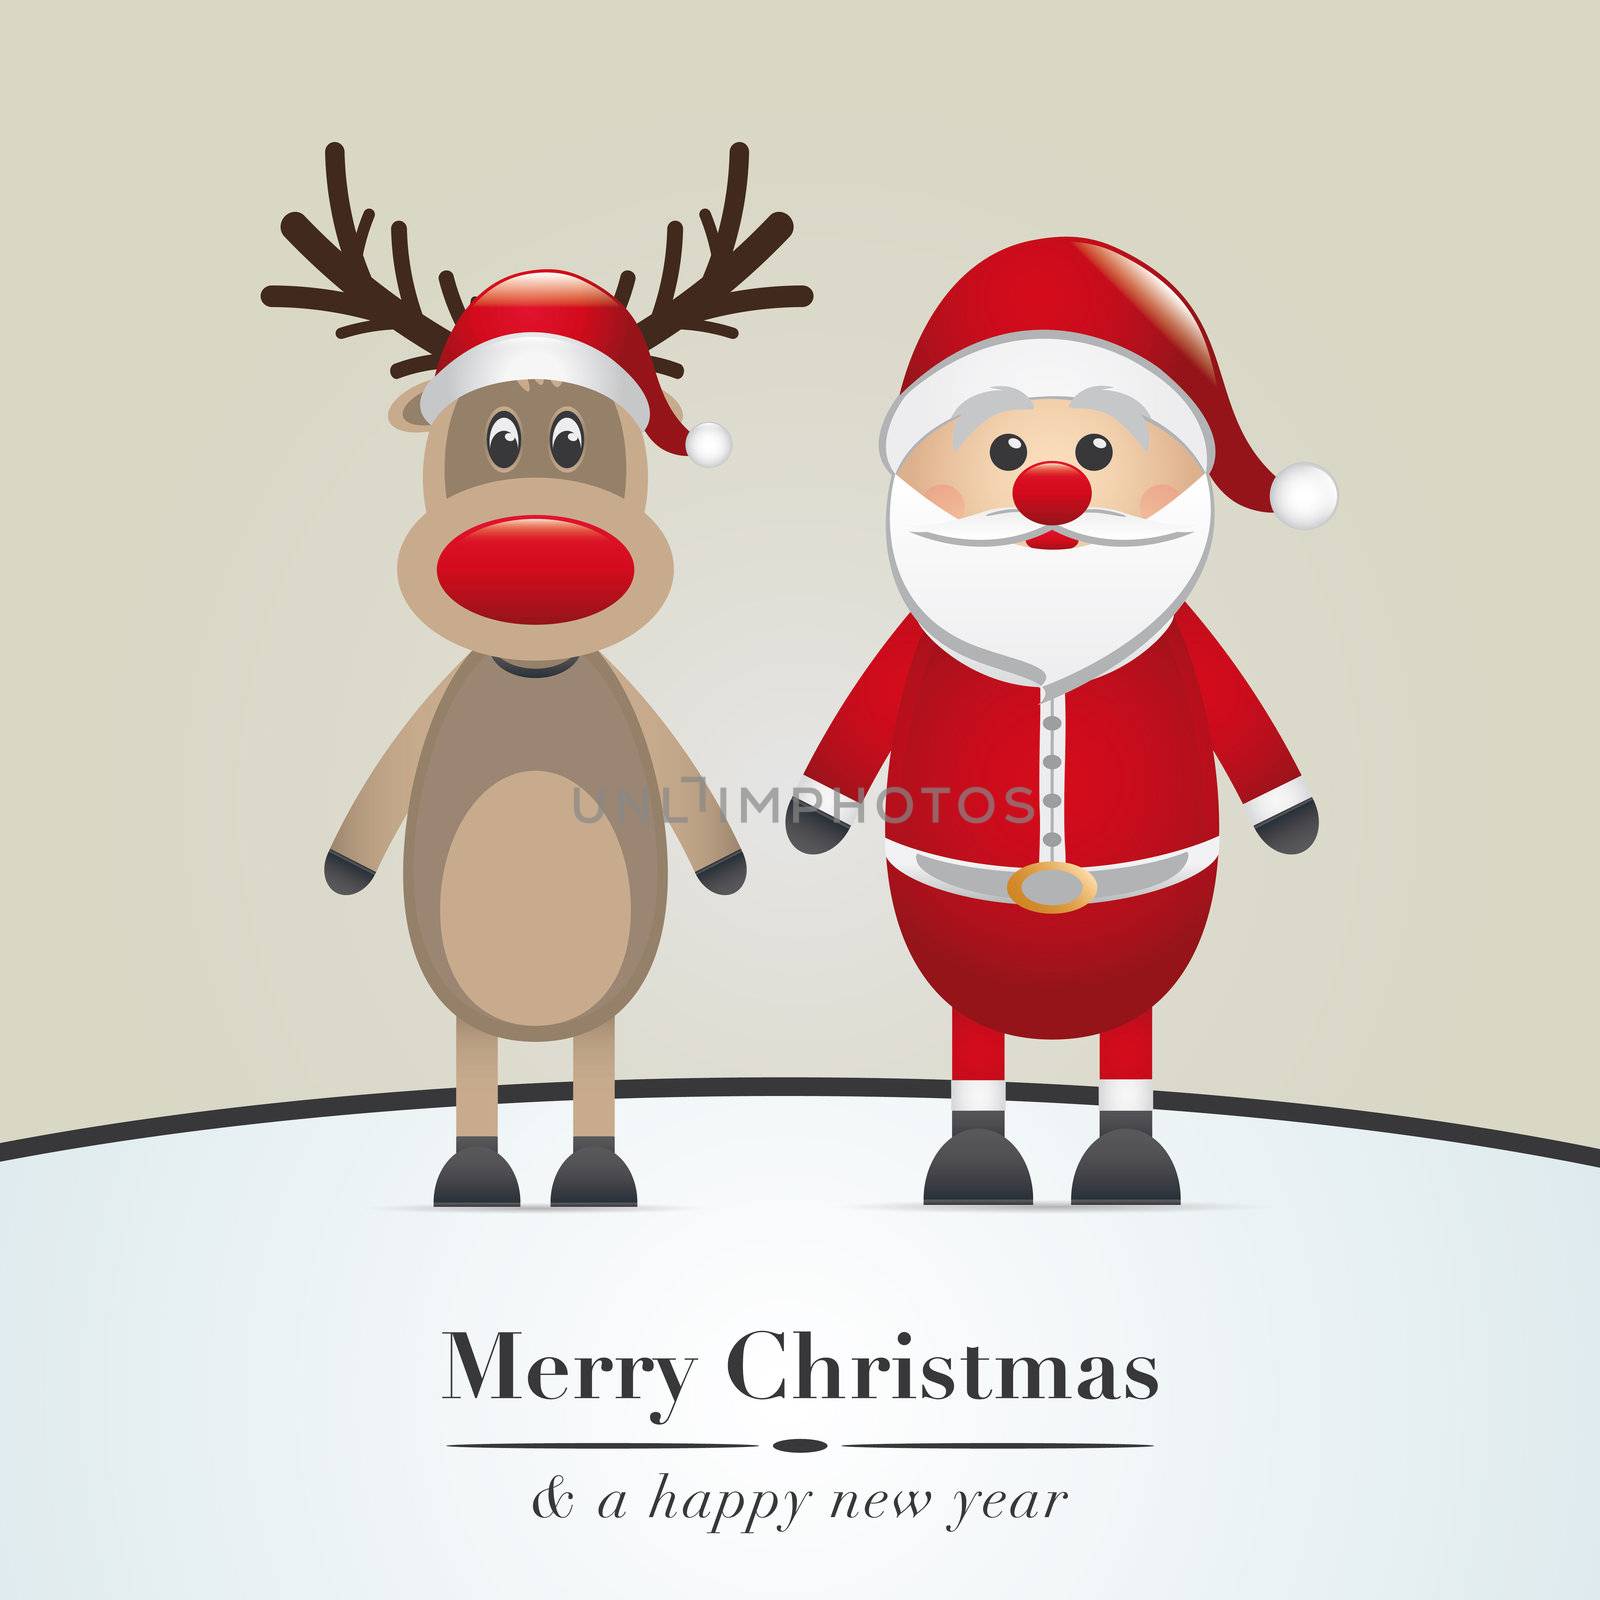 reindeer and santa claus by dariusL